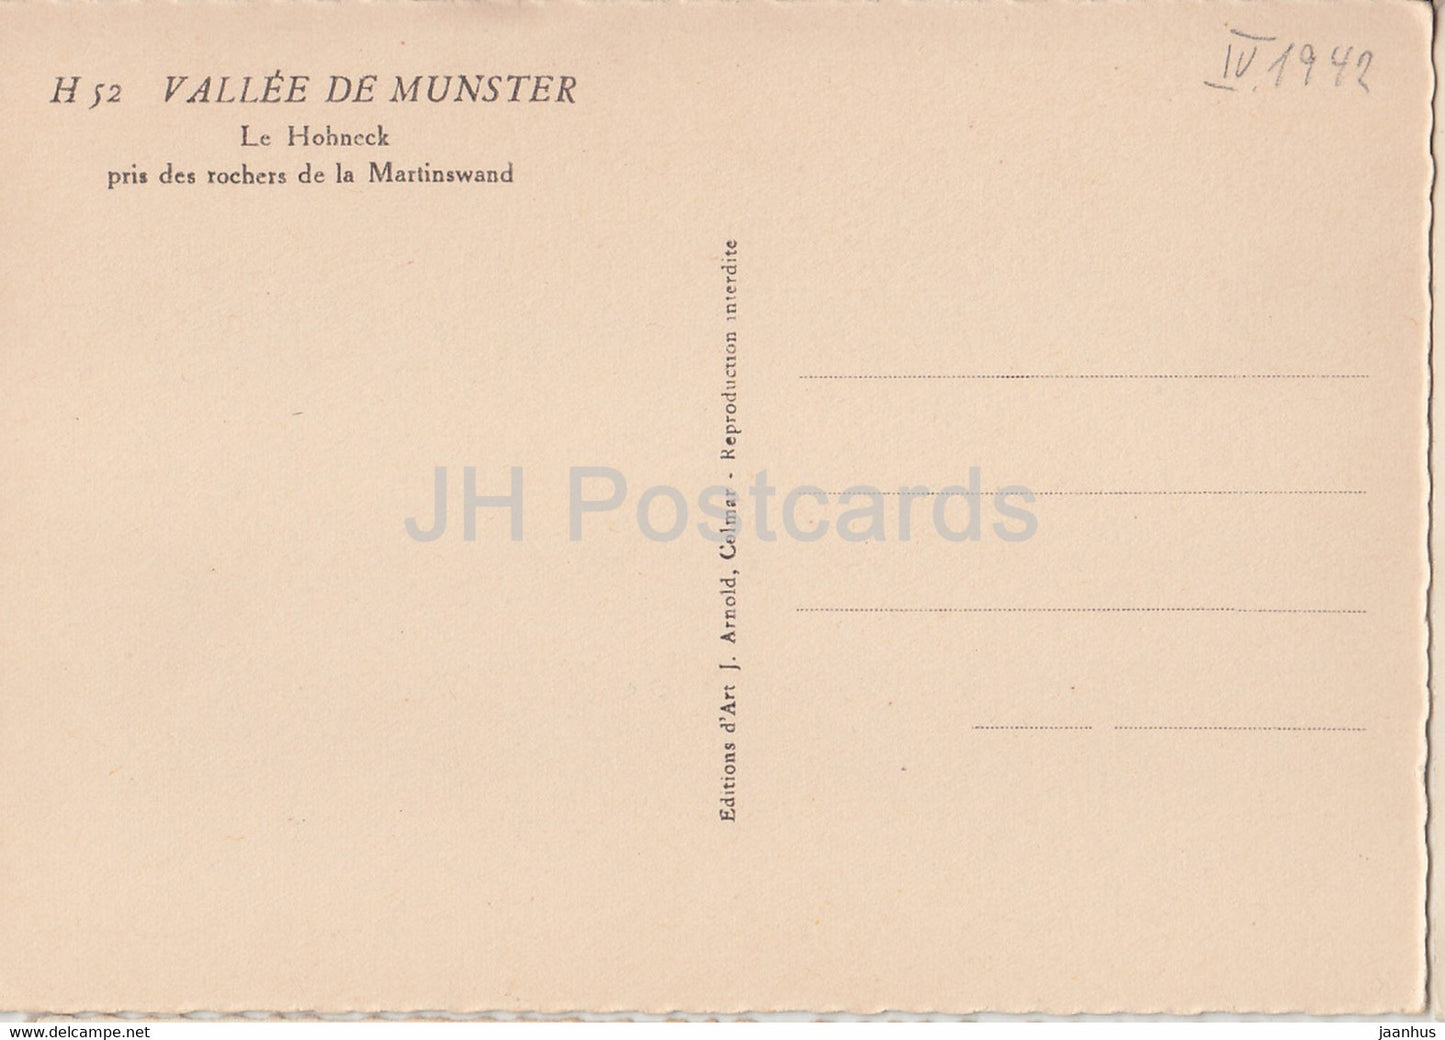 Vallee de Munster - Le Hohneck pris de rochers de la Martinswand - old postcard - 1942 - France - unused